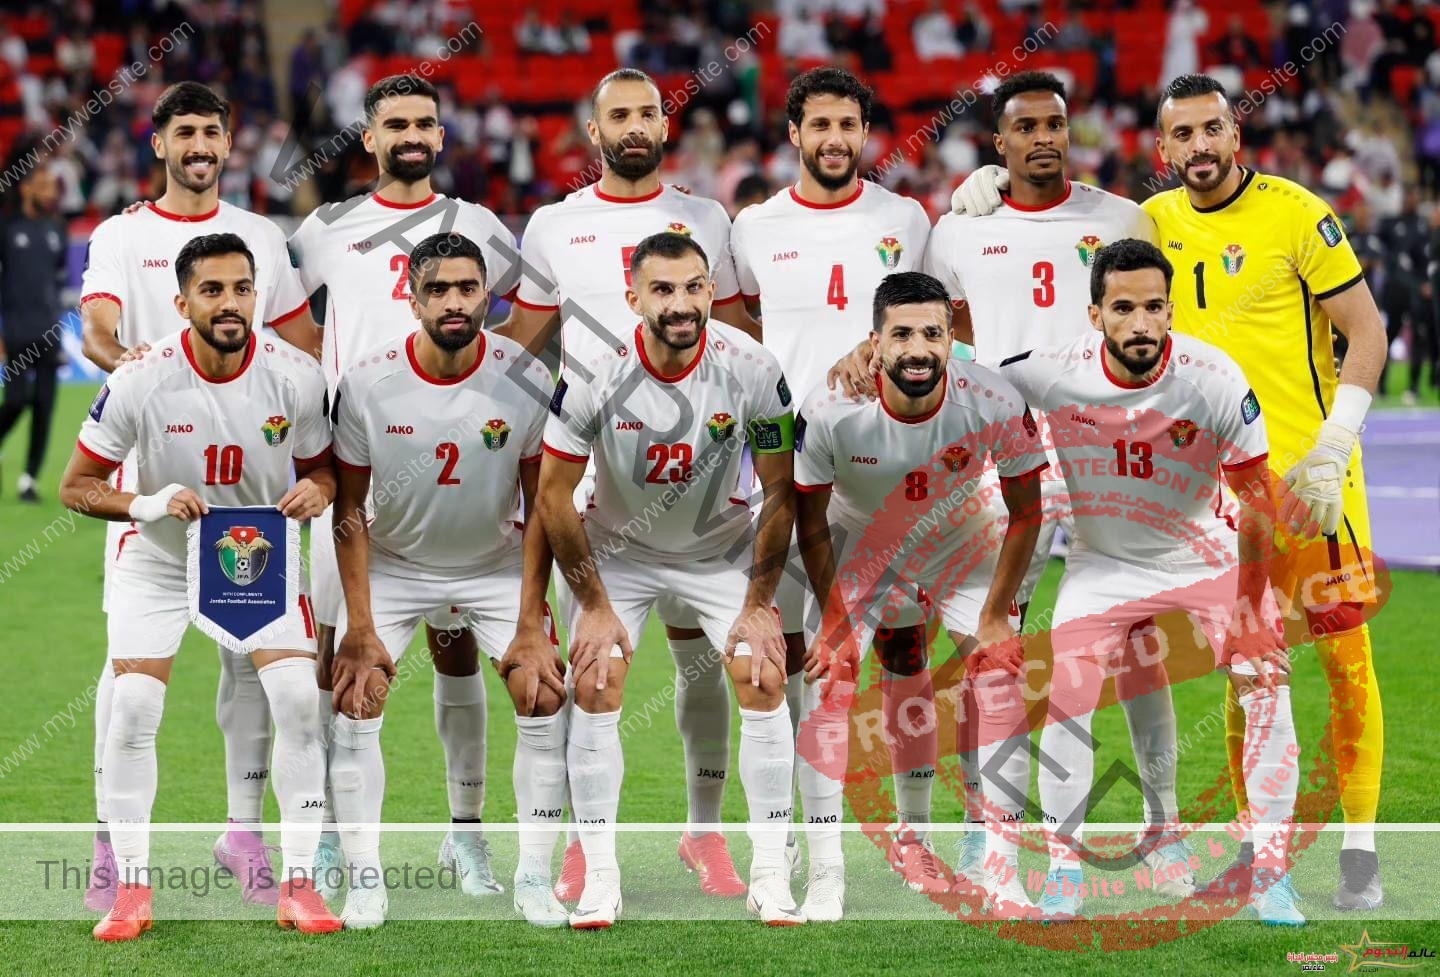 منتخب الأردن يهزم منتخب كوريا الجنوبية ويتأهل لنهائي كأس آسيا 